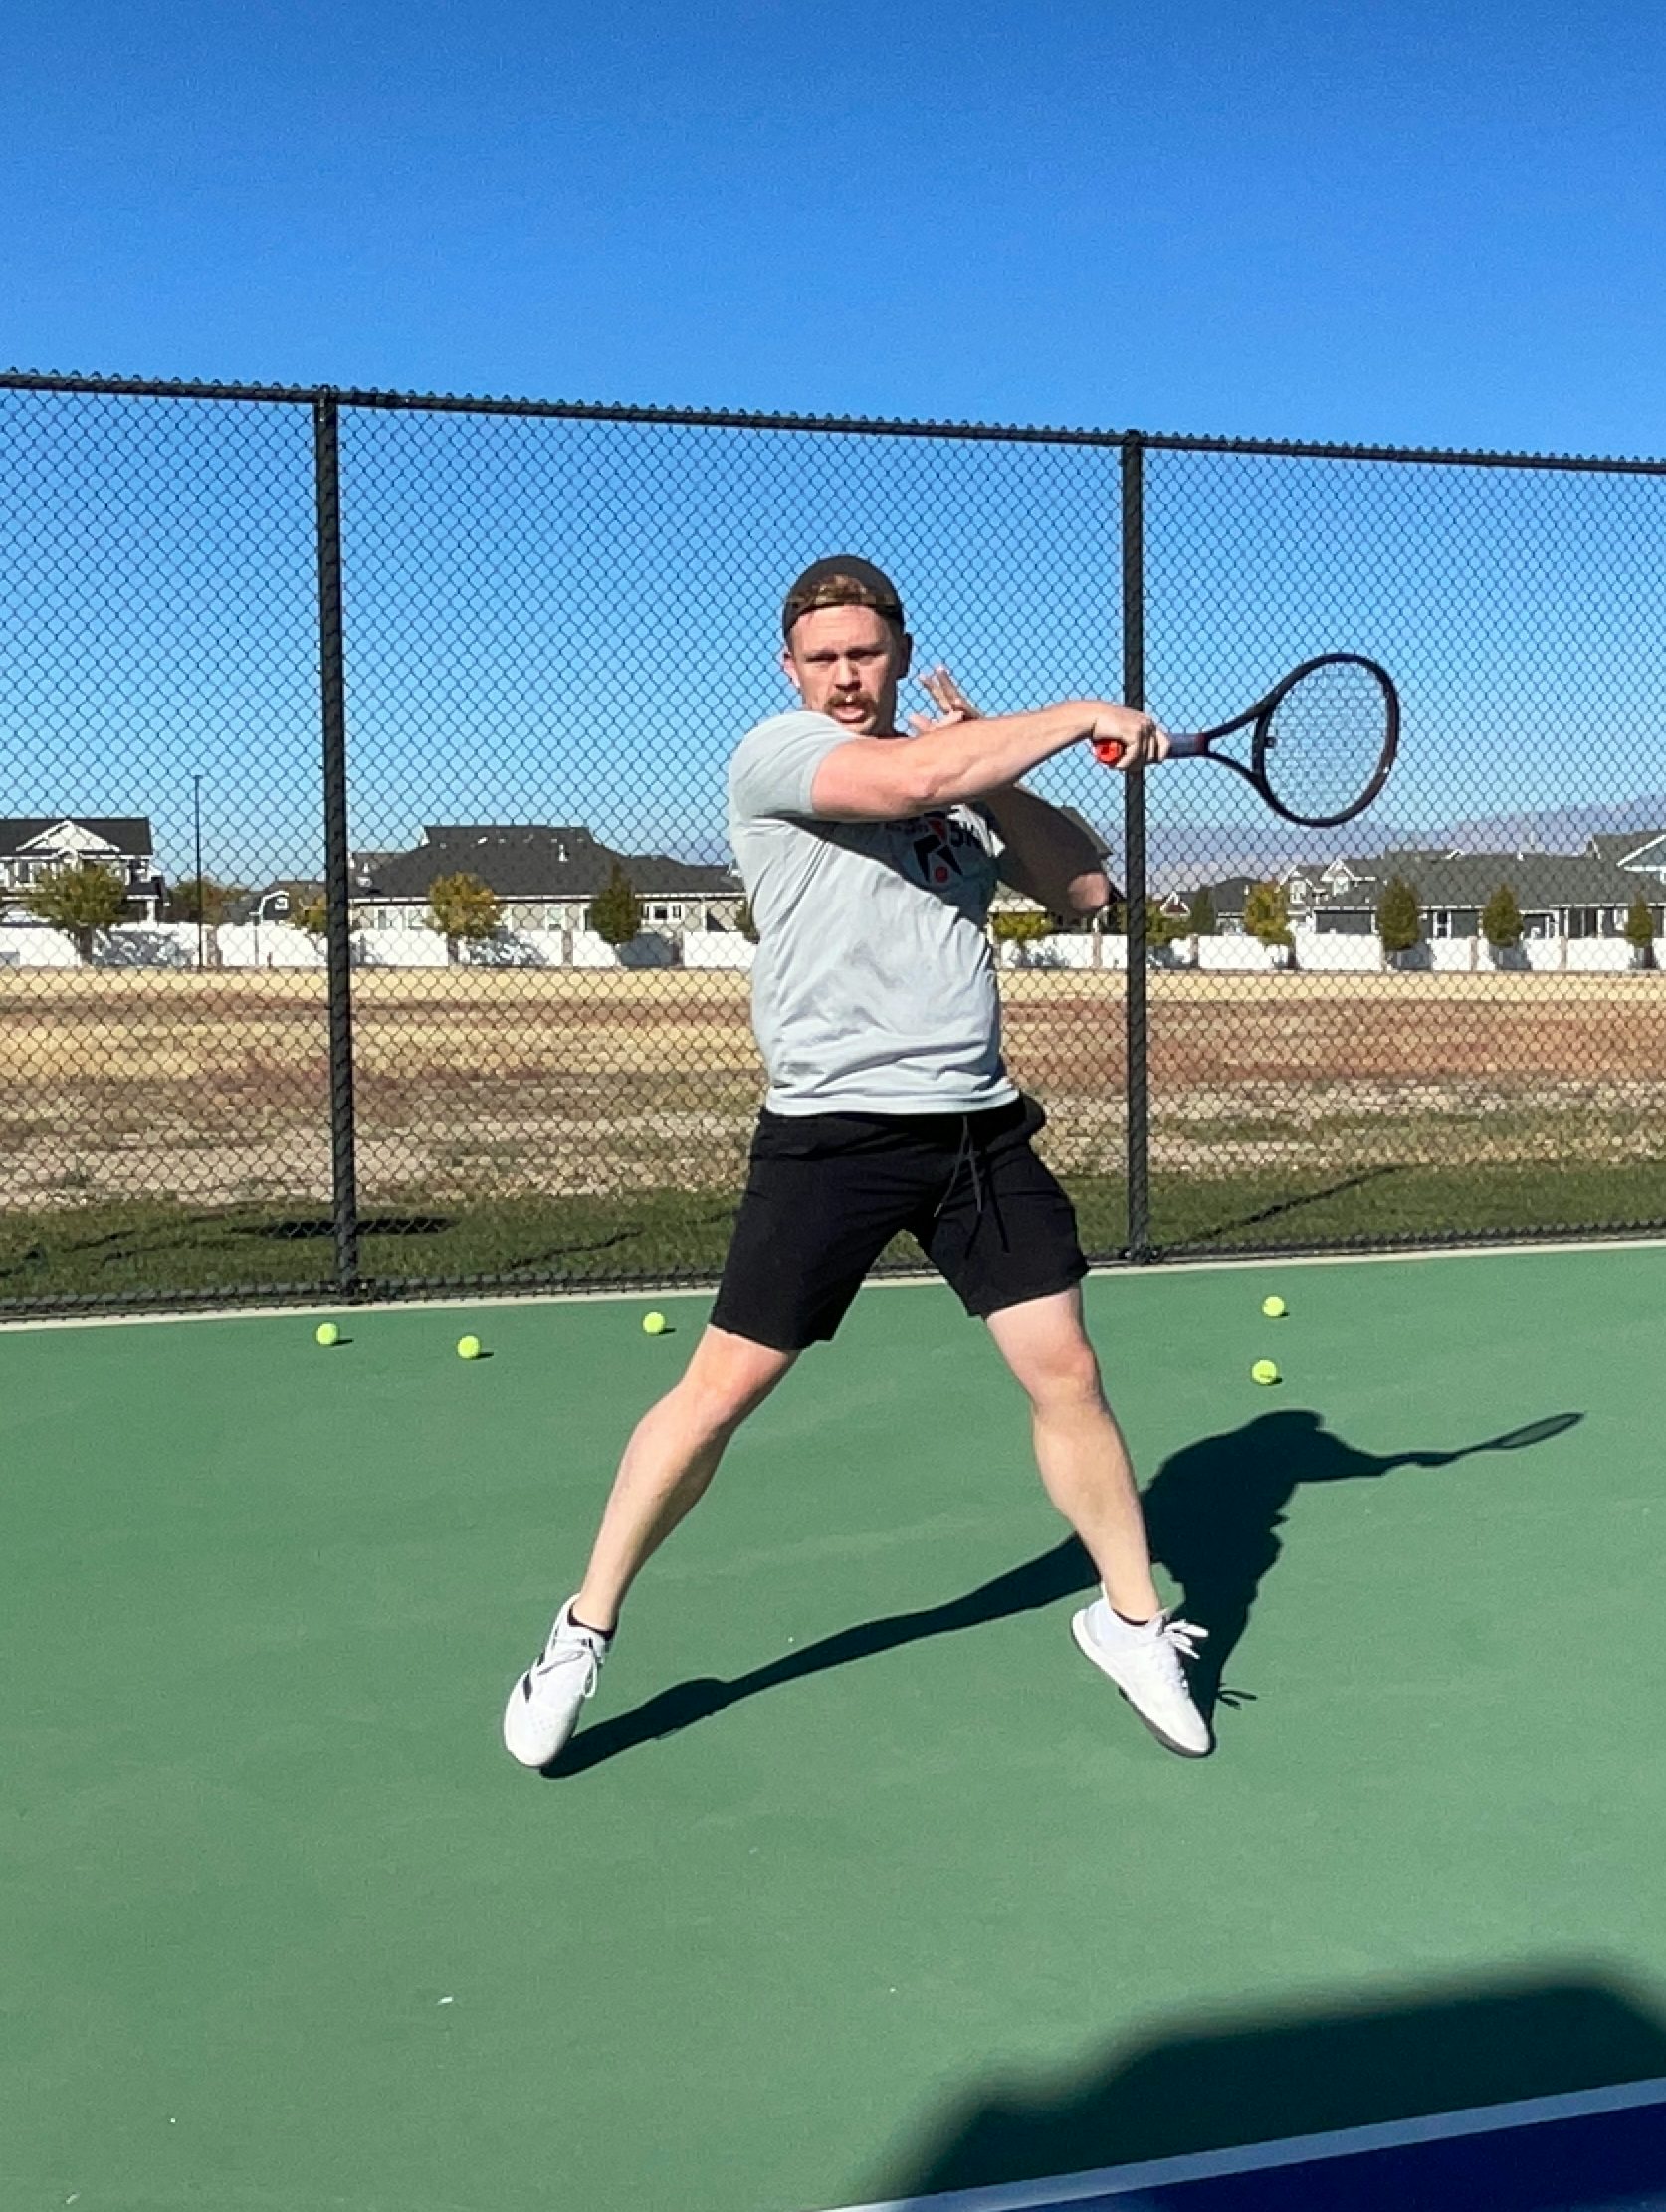 Tennis & Racquet Expert Russell Christensen